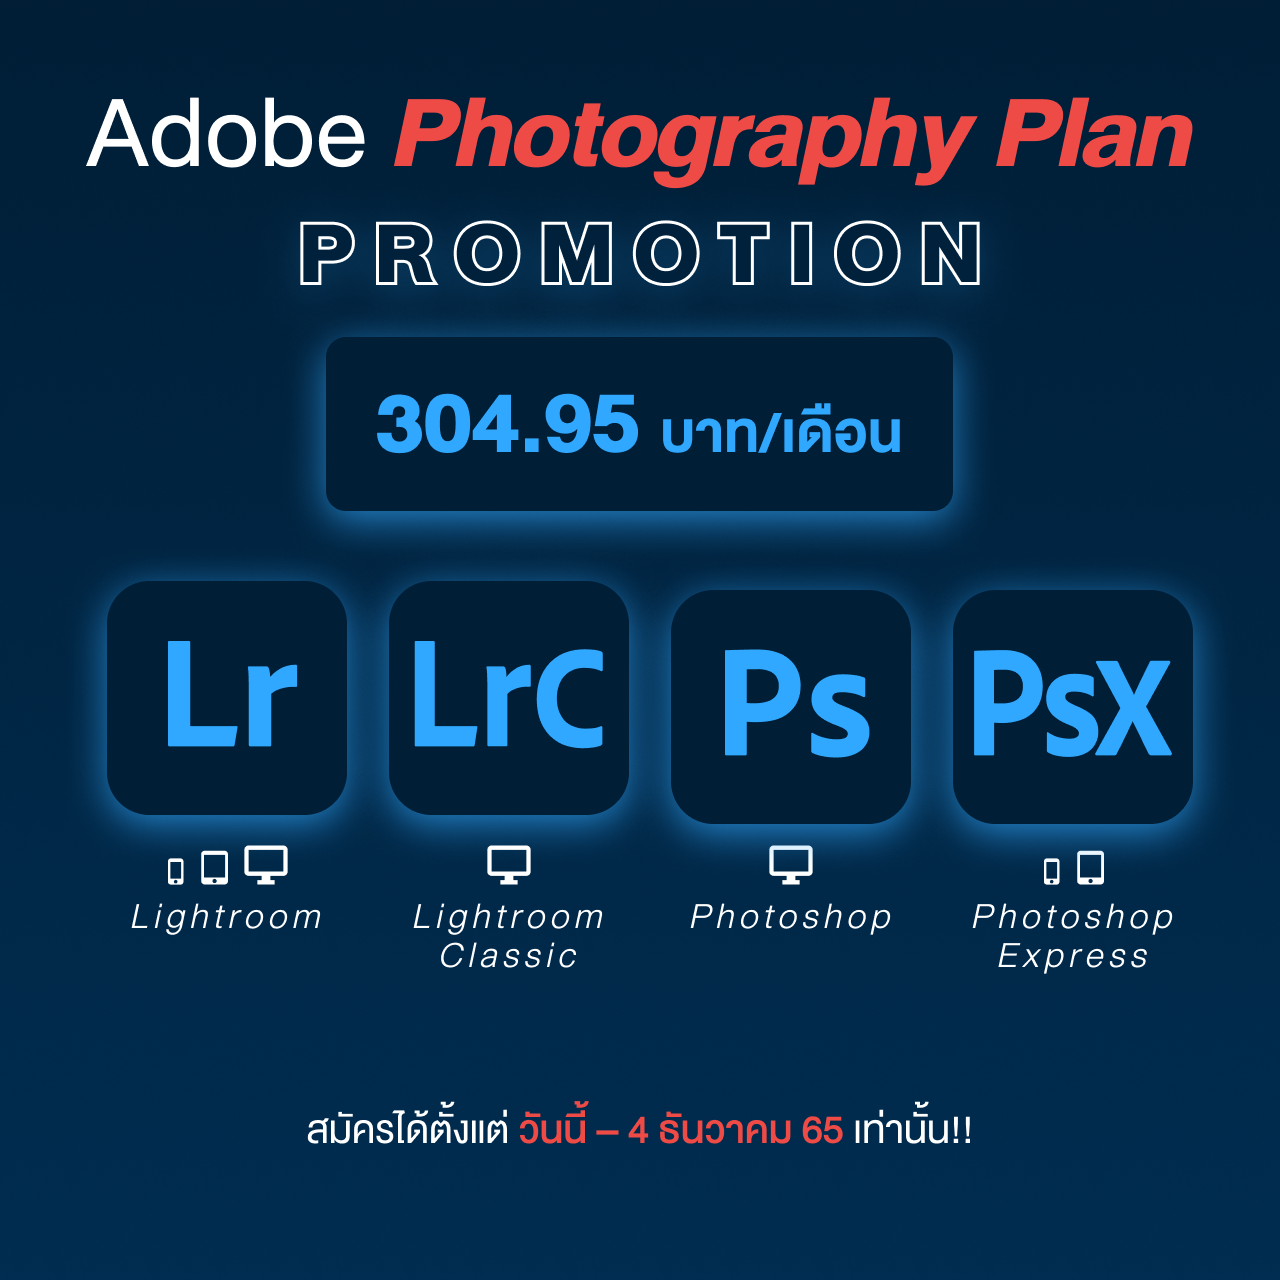 โปรแรง Photography Plan จากอะโดบีส่งท้ายปี สำหรับช่างภาพมือโปร และสมัครเล่น